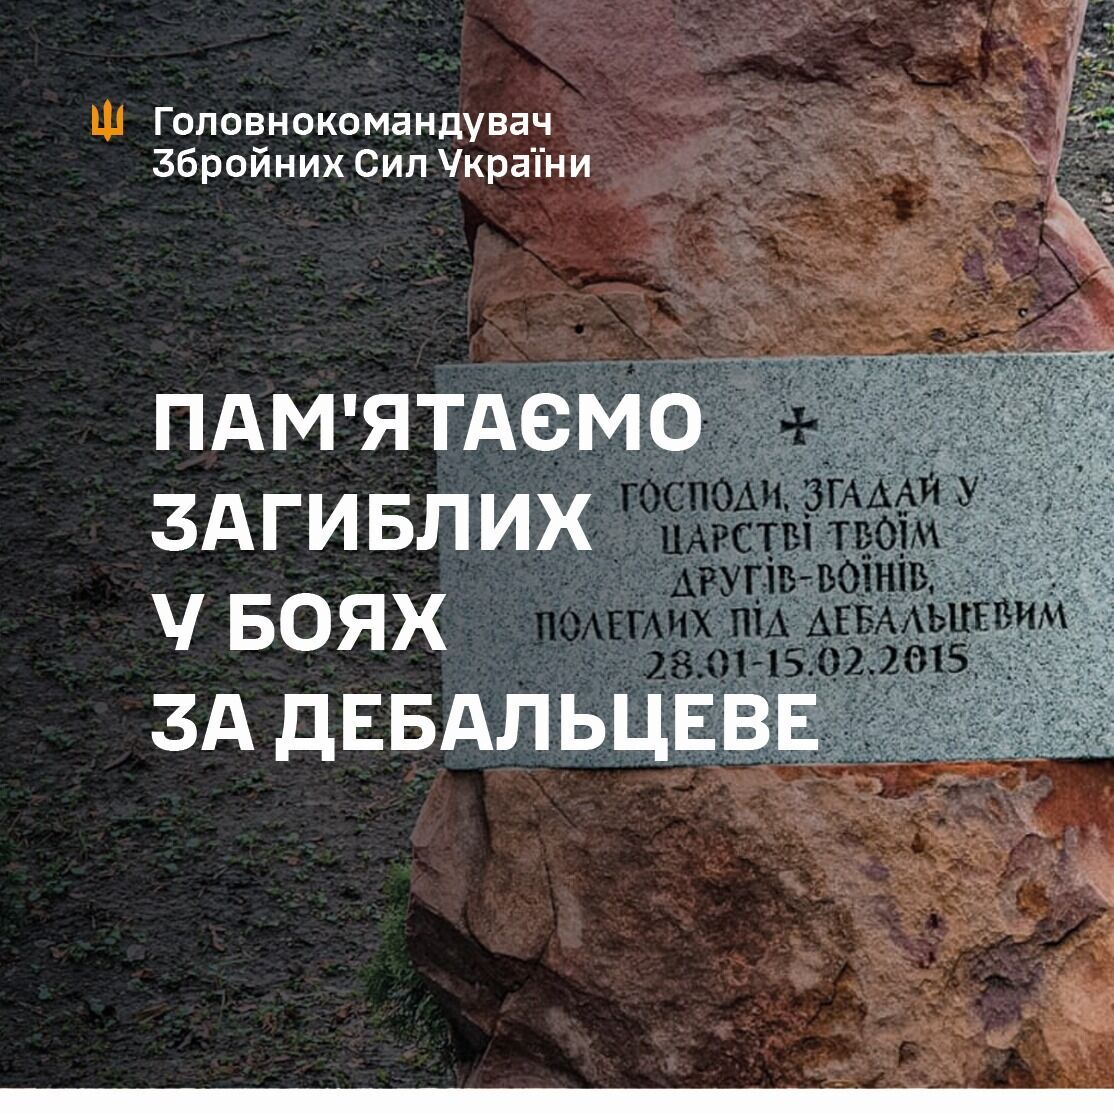 День пам'яті воїнів, які загинули у боях у районі міста Дебальцеве.